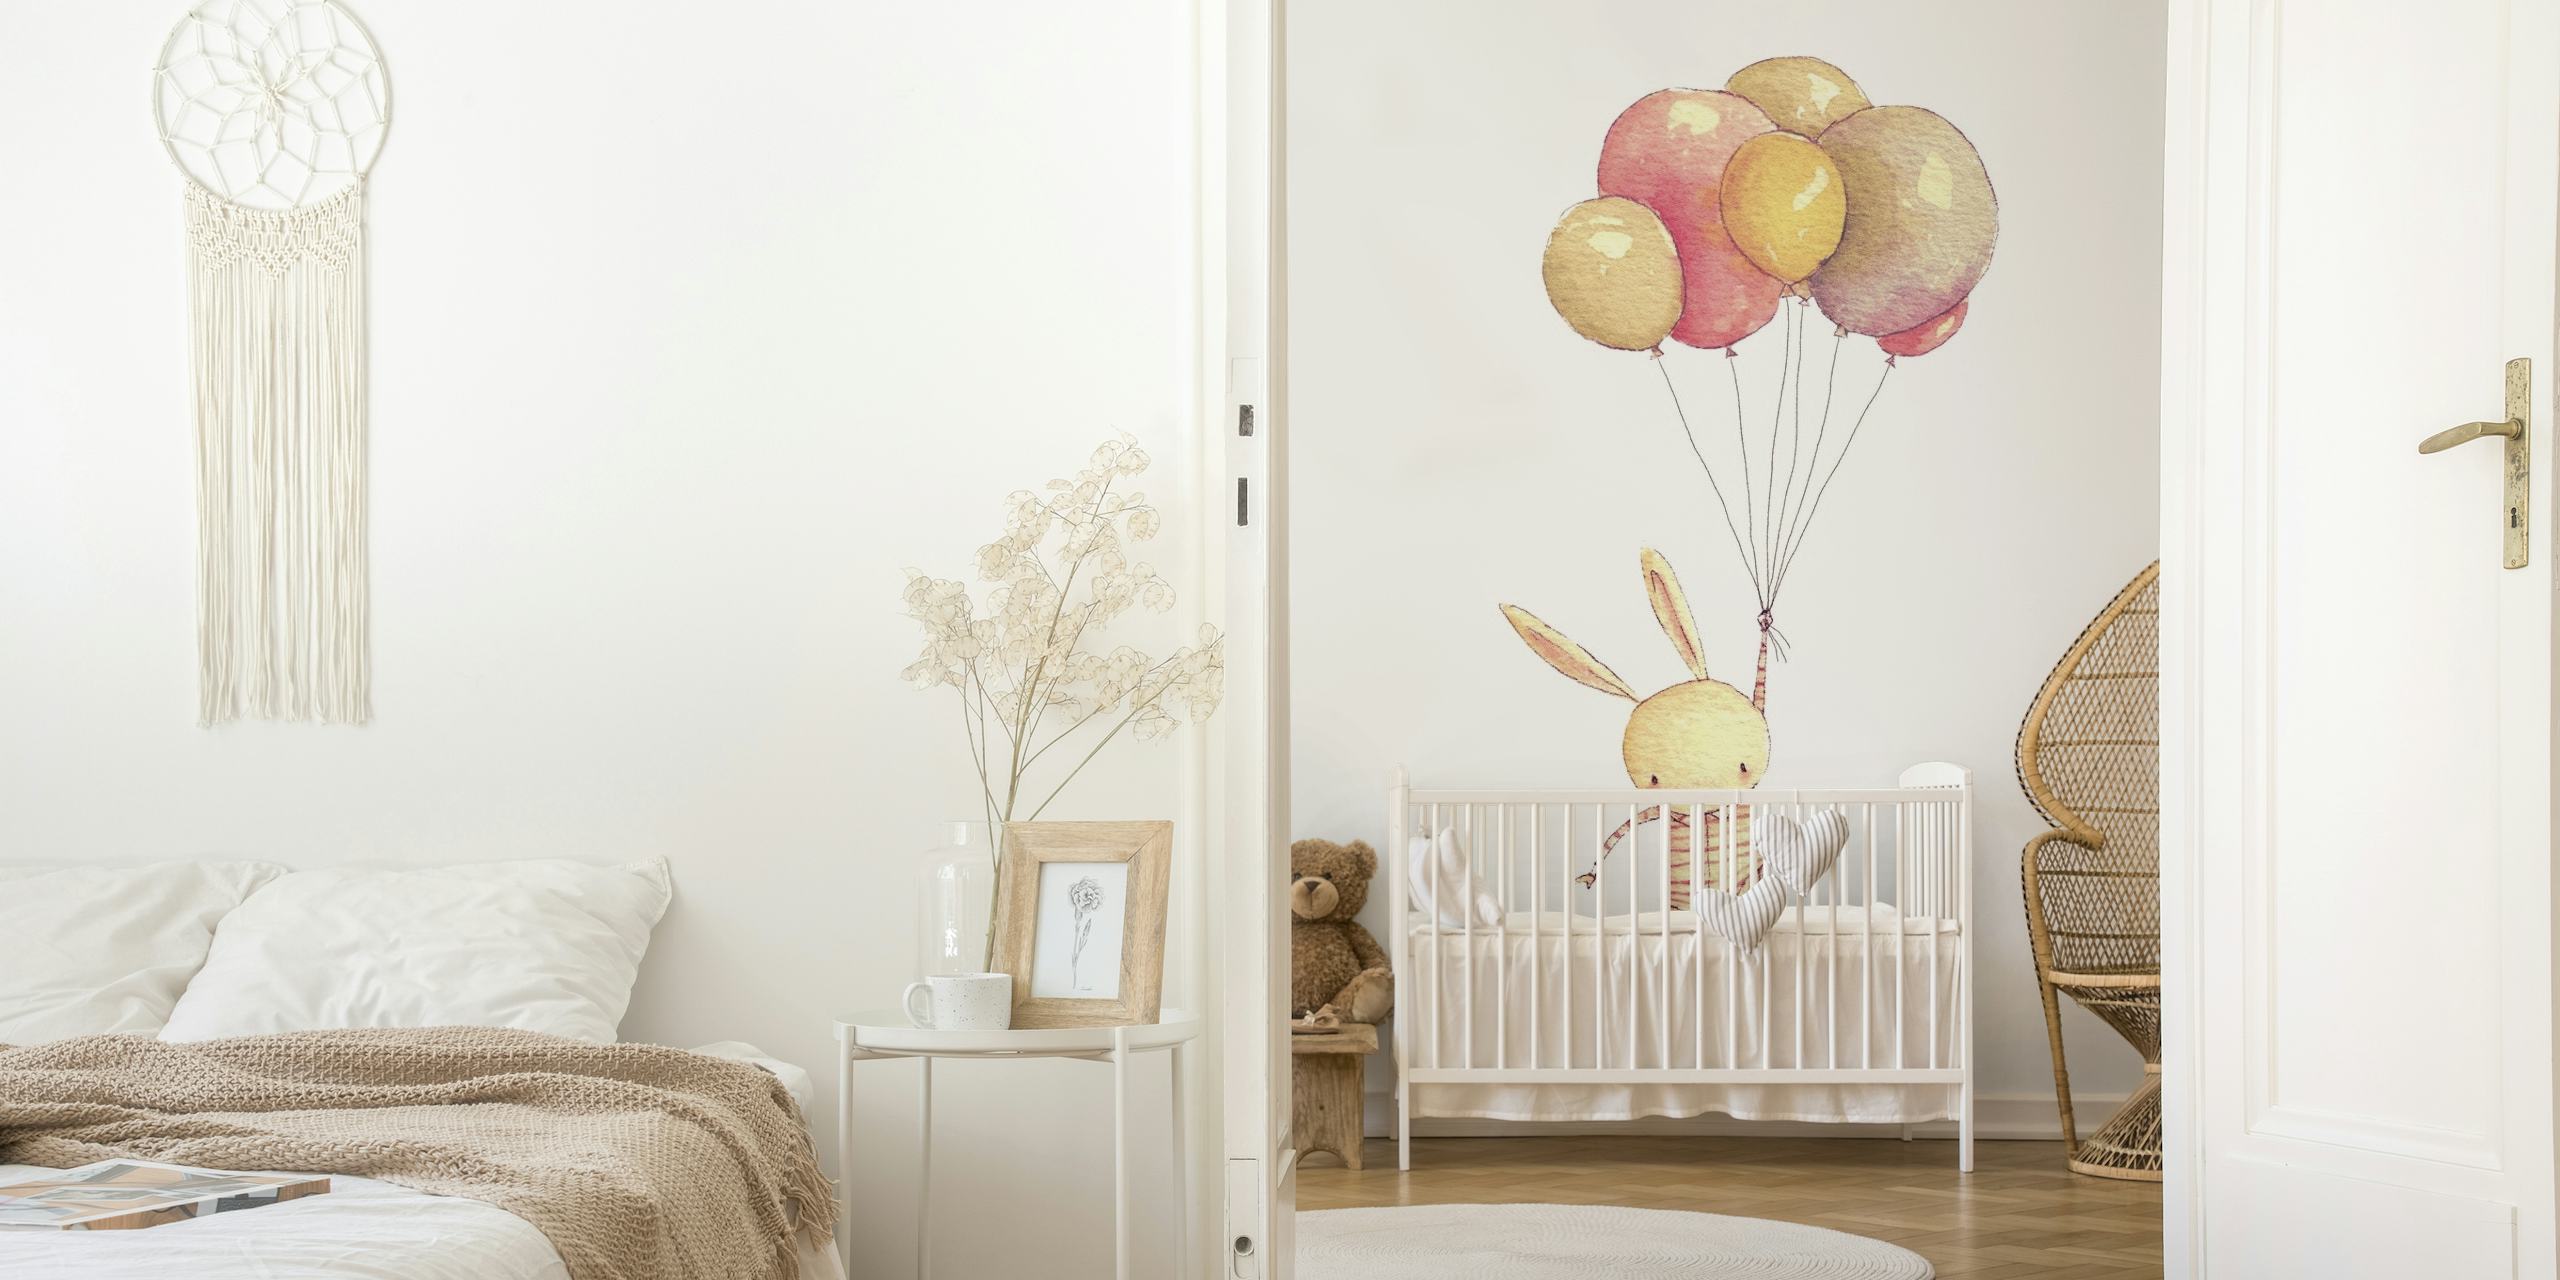 Ilustrace zajíčka přivázaného k pastelovým balónkům vznášejícím se vzhůru na nástěnné malbě.